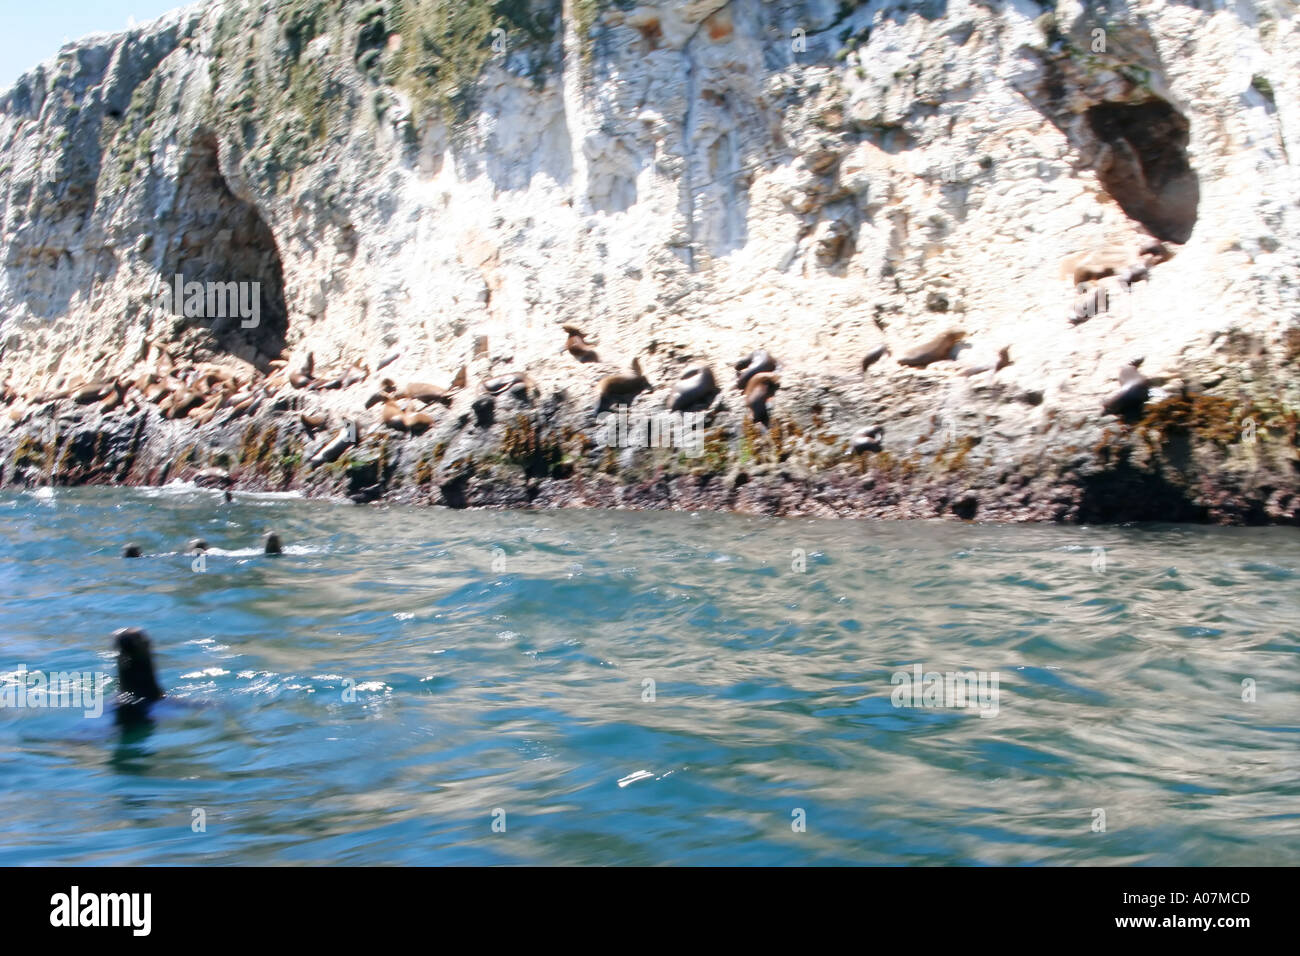 Les lions de mer à l'Ile San sebastian près de chiloe Chili Patagonie amérique du sud Banque D'Images